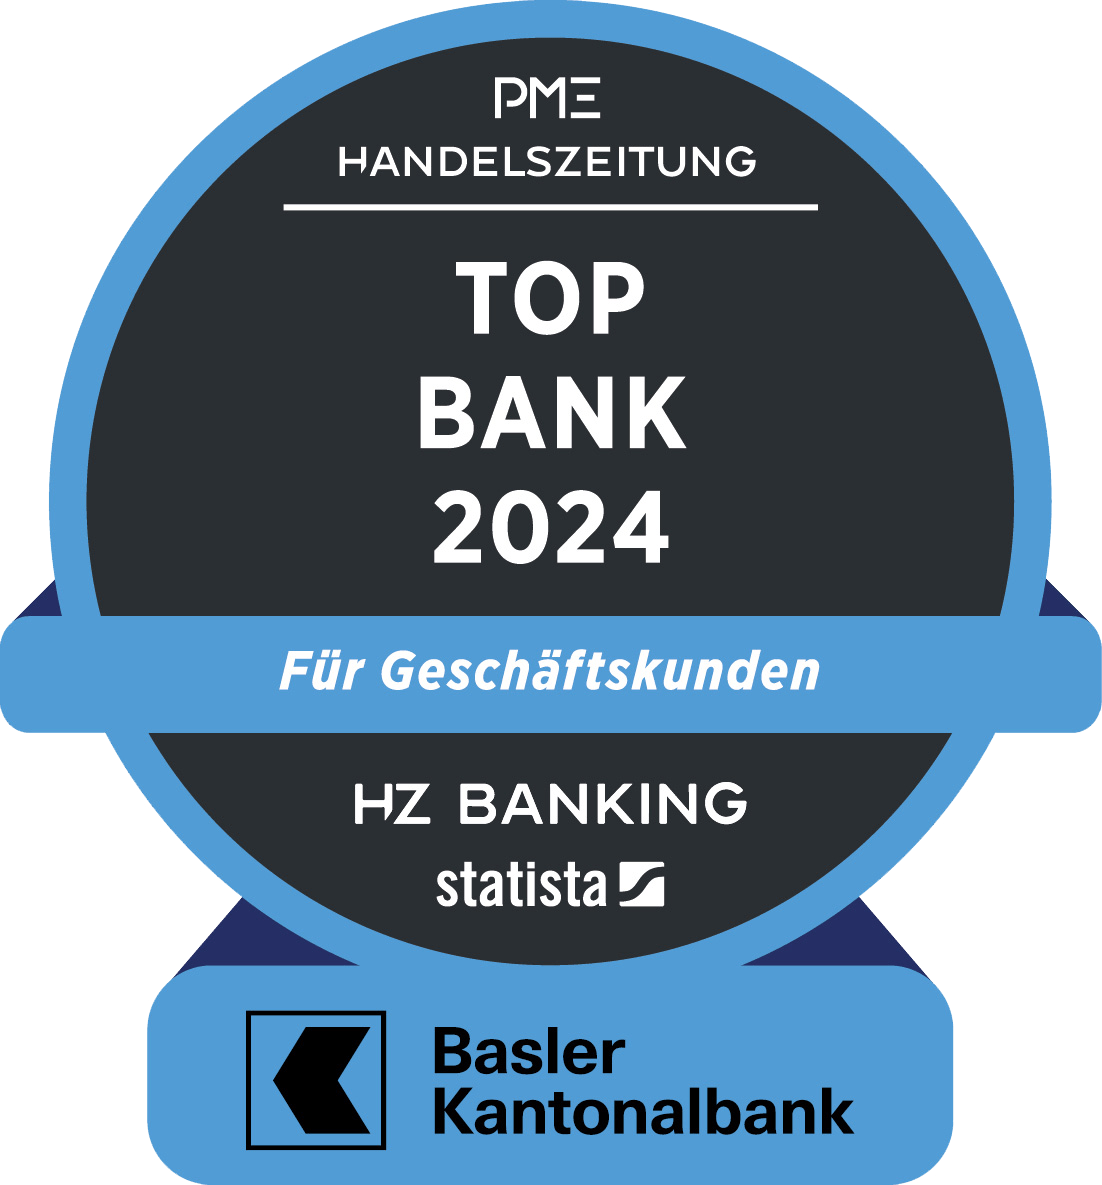 Die Basler Kantonalbank wurde in der Umfrage durch die SonntagsZeitung zur «Top Bank 2024» für Geschäftskunden gekürt.